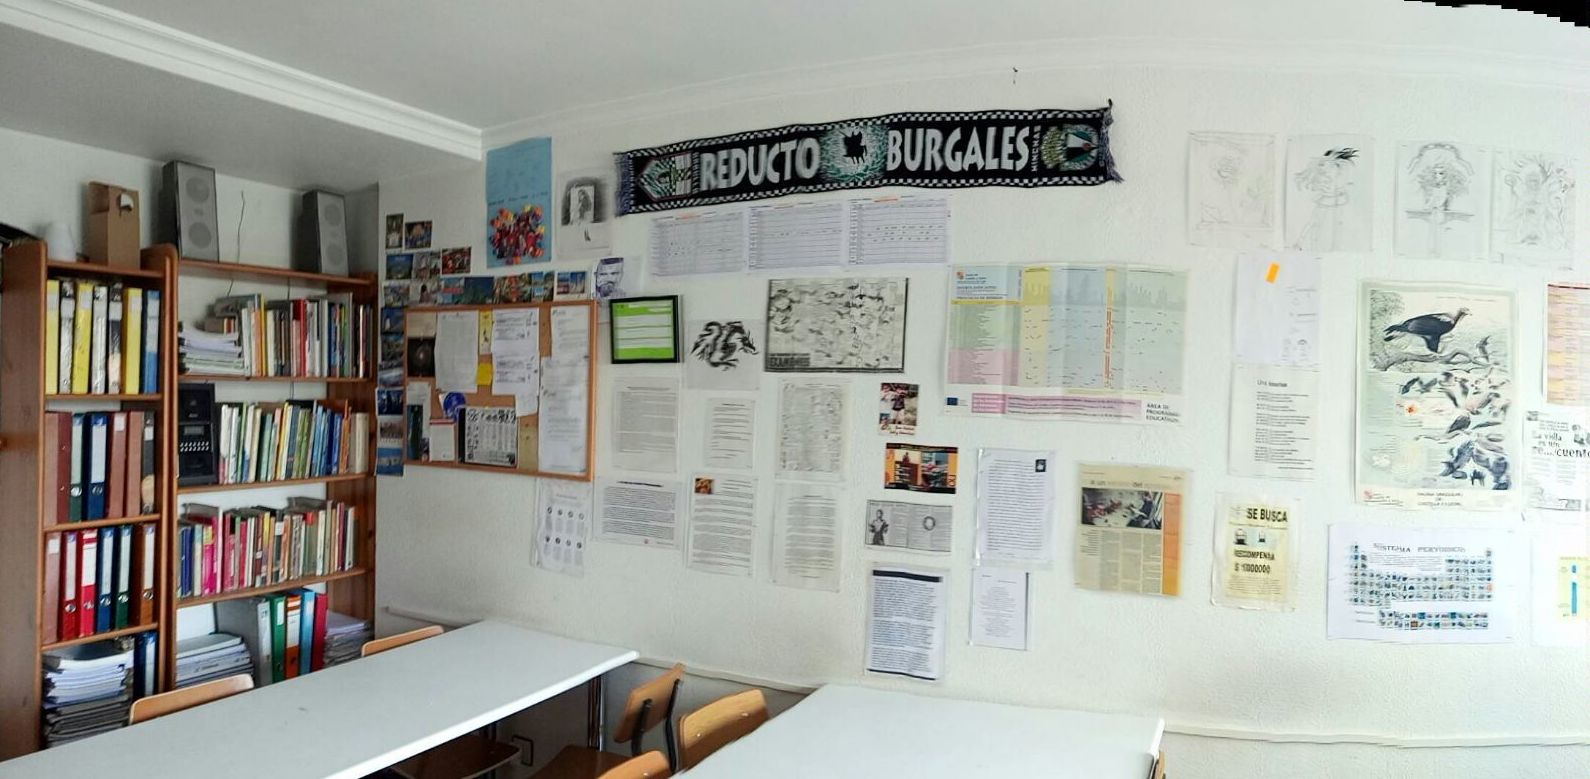 Academia de refuerzo en Burgos 